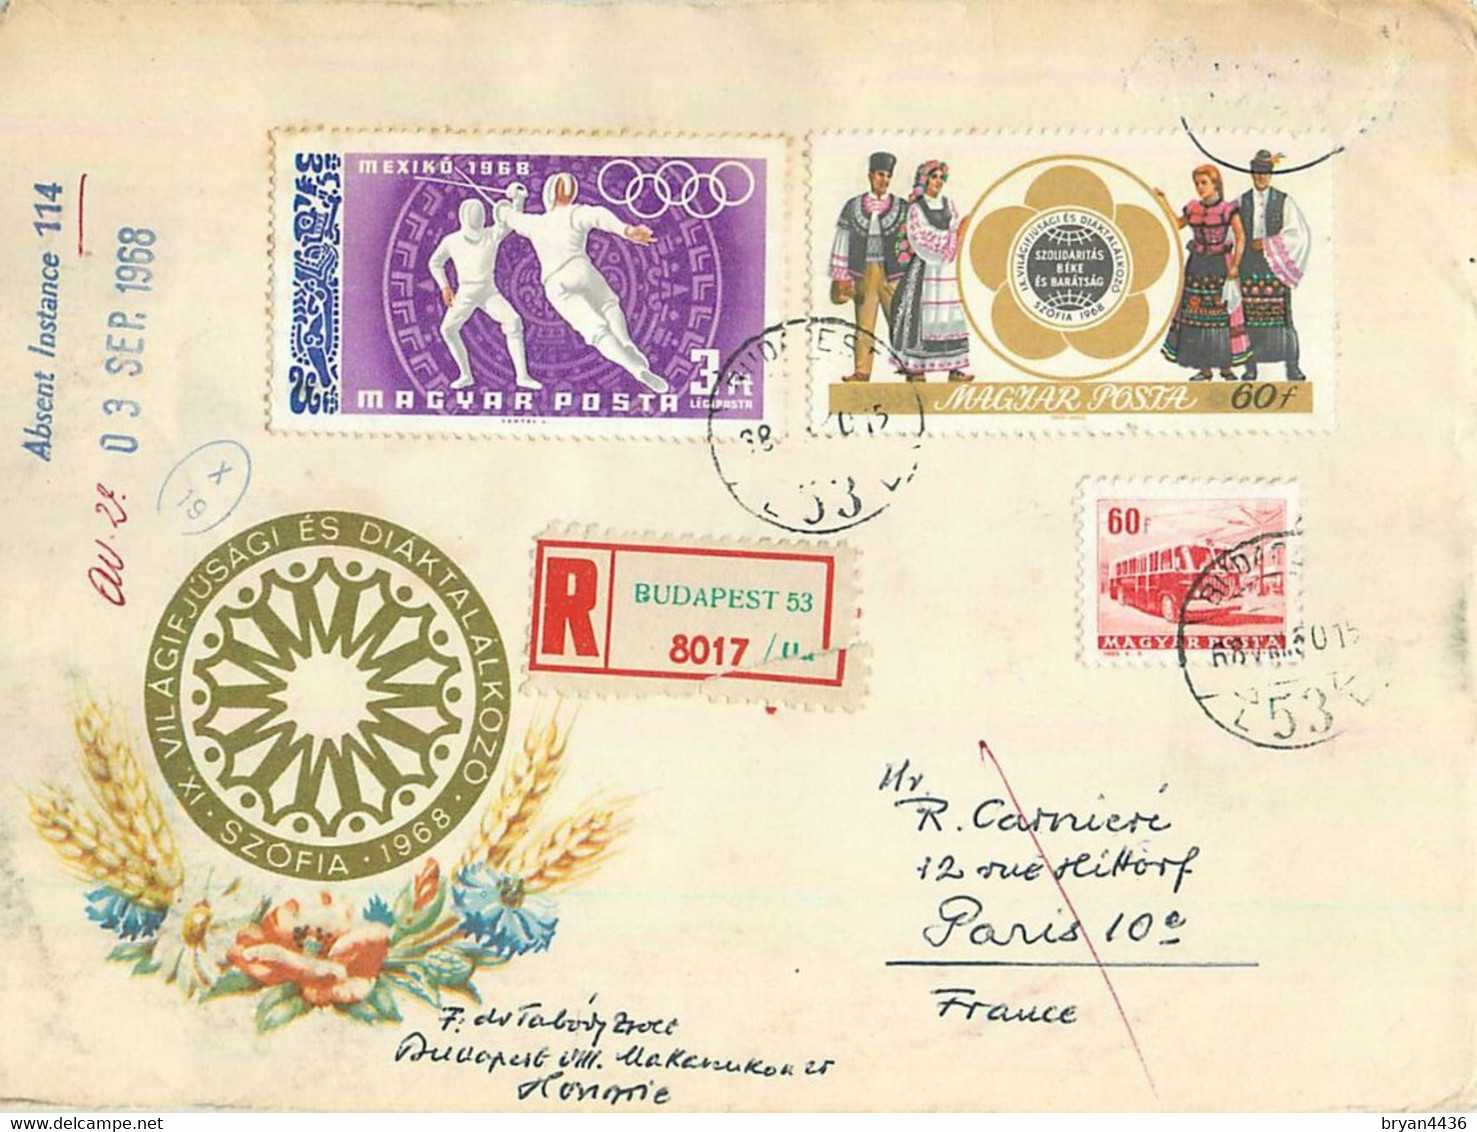 HONGRIE - BELLE LETTRE ILLUSTREE DECORE - BEL AFFRANCHISSEMENT - 1968 - Vers PARIS FRANCE - Postmark Collection